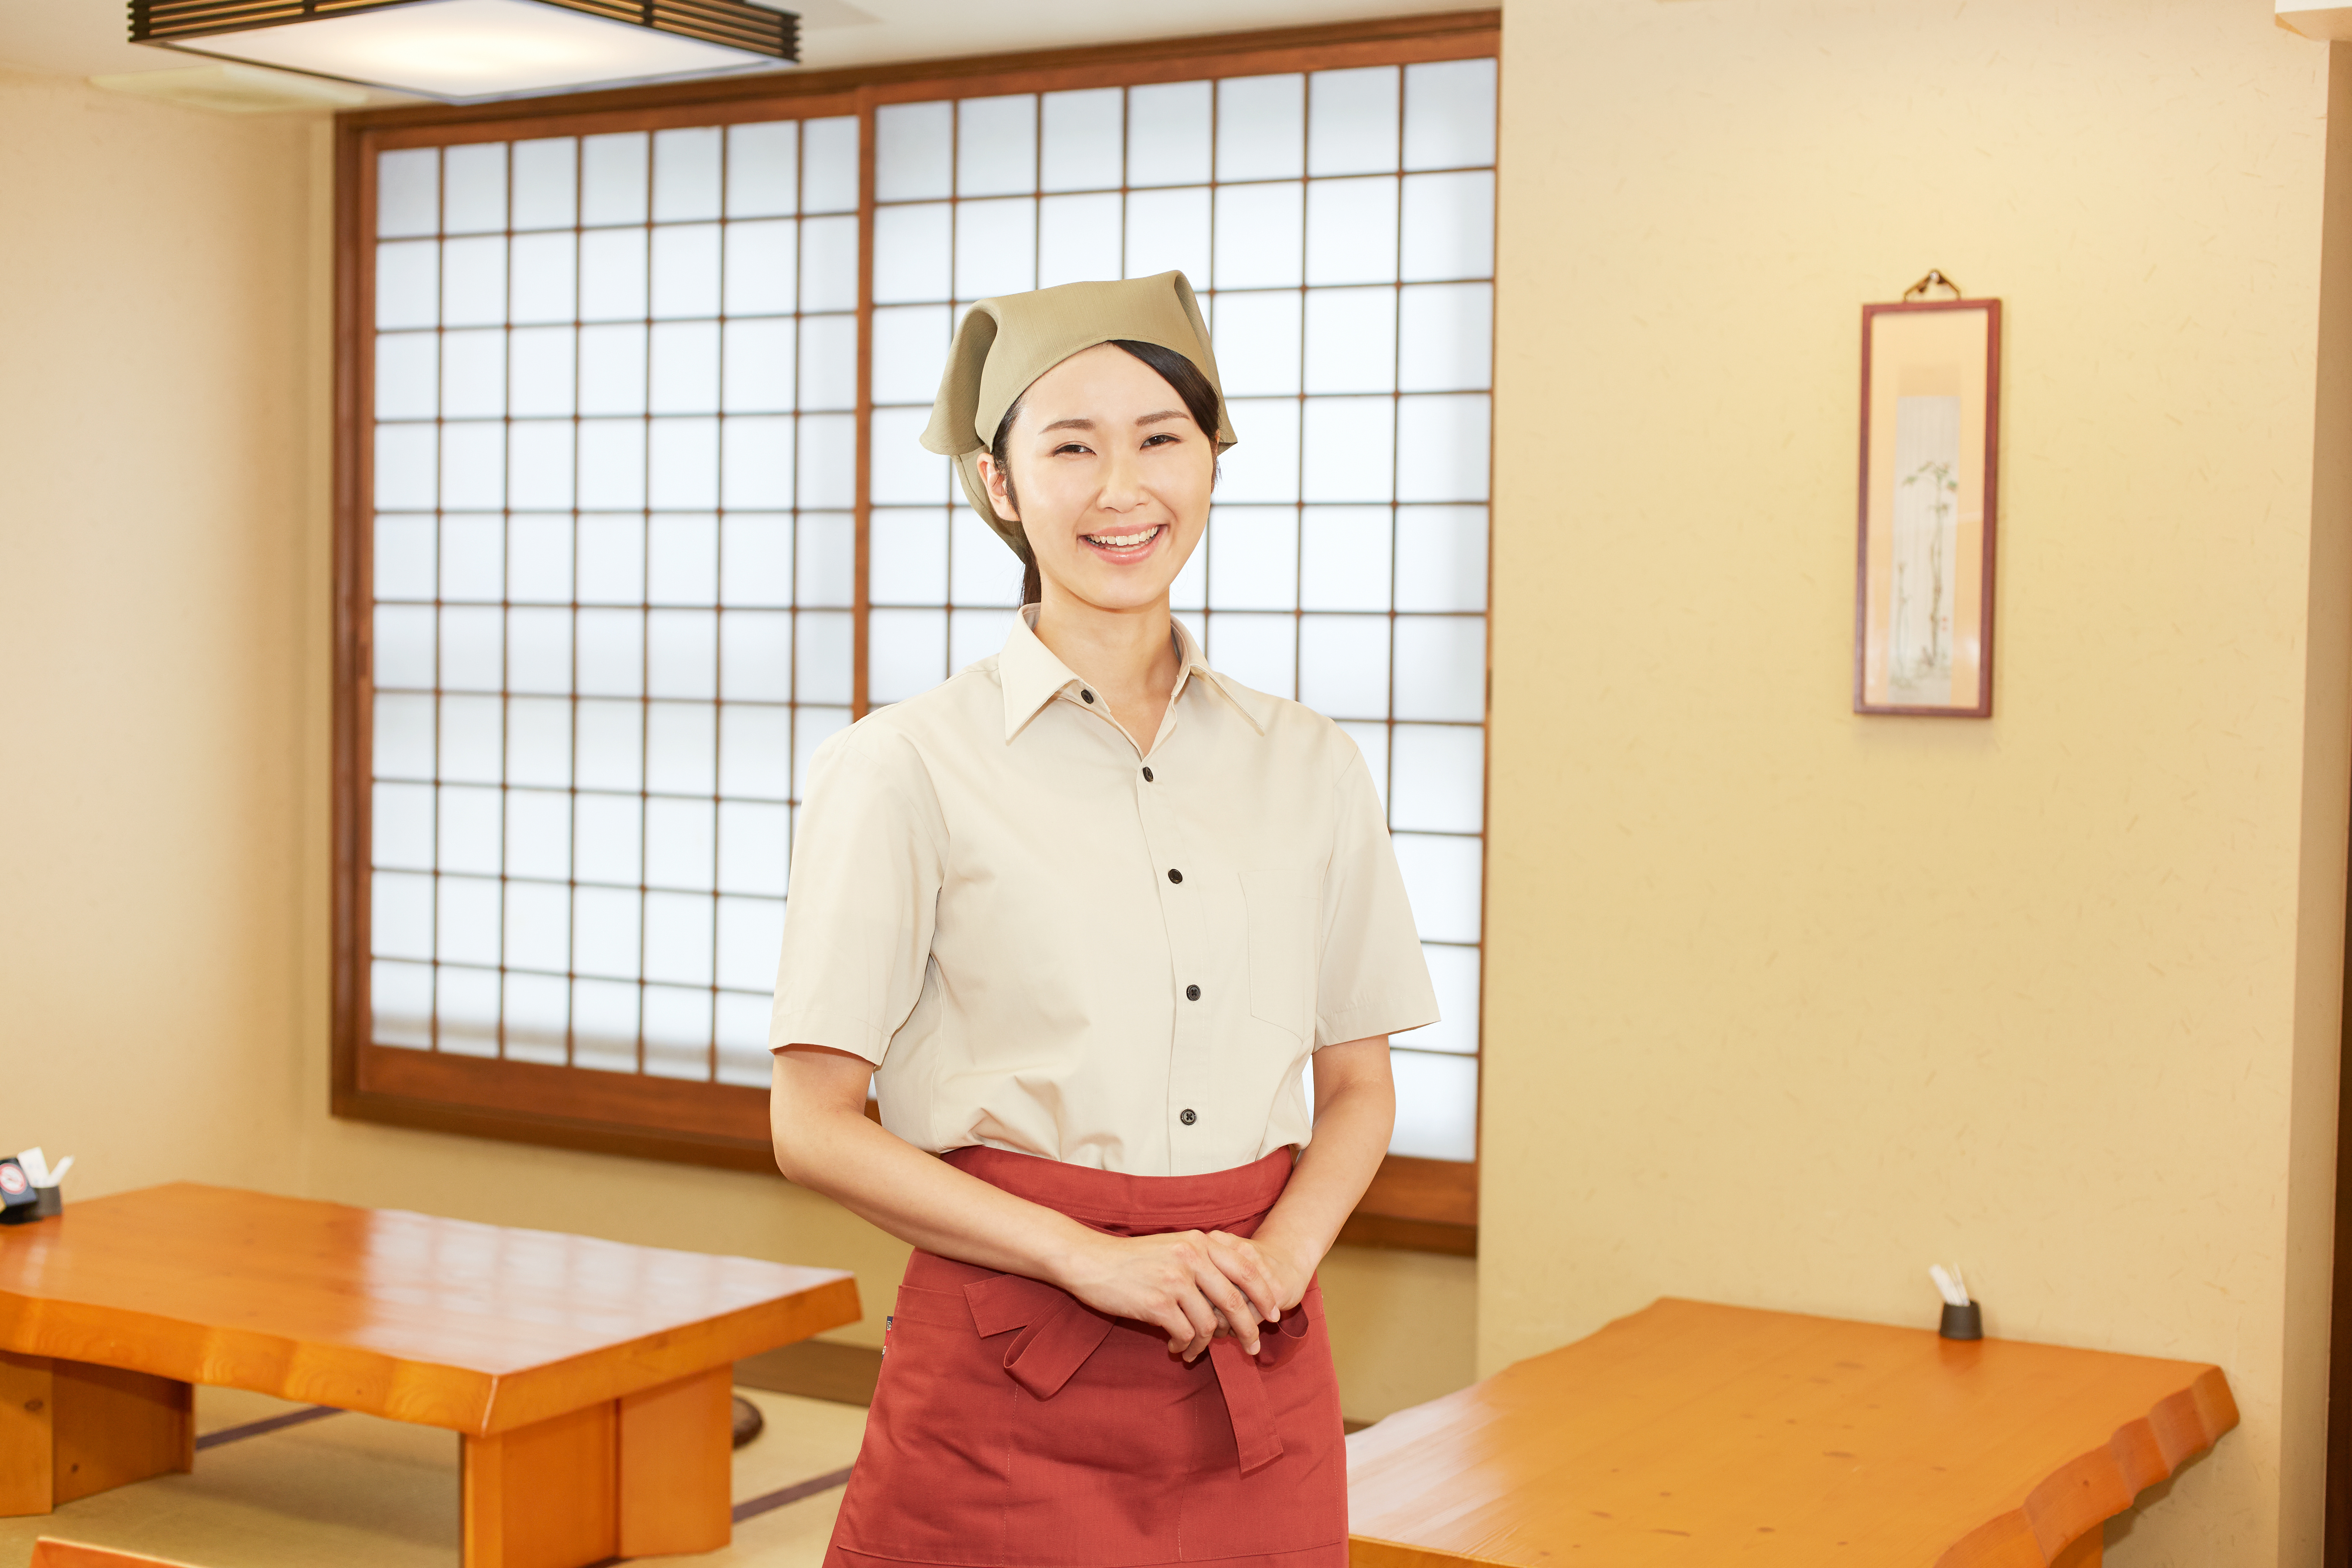 微笑む和食店スタッフの写真ポイントは前掛け